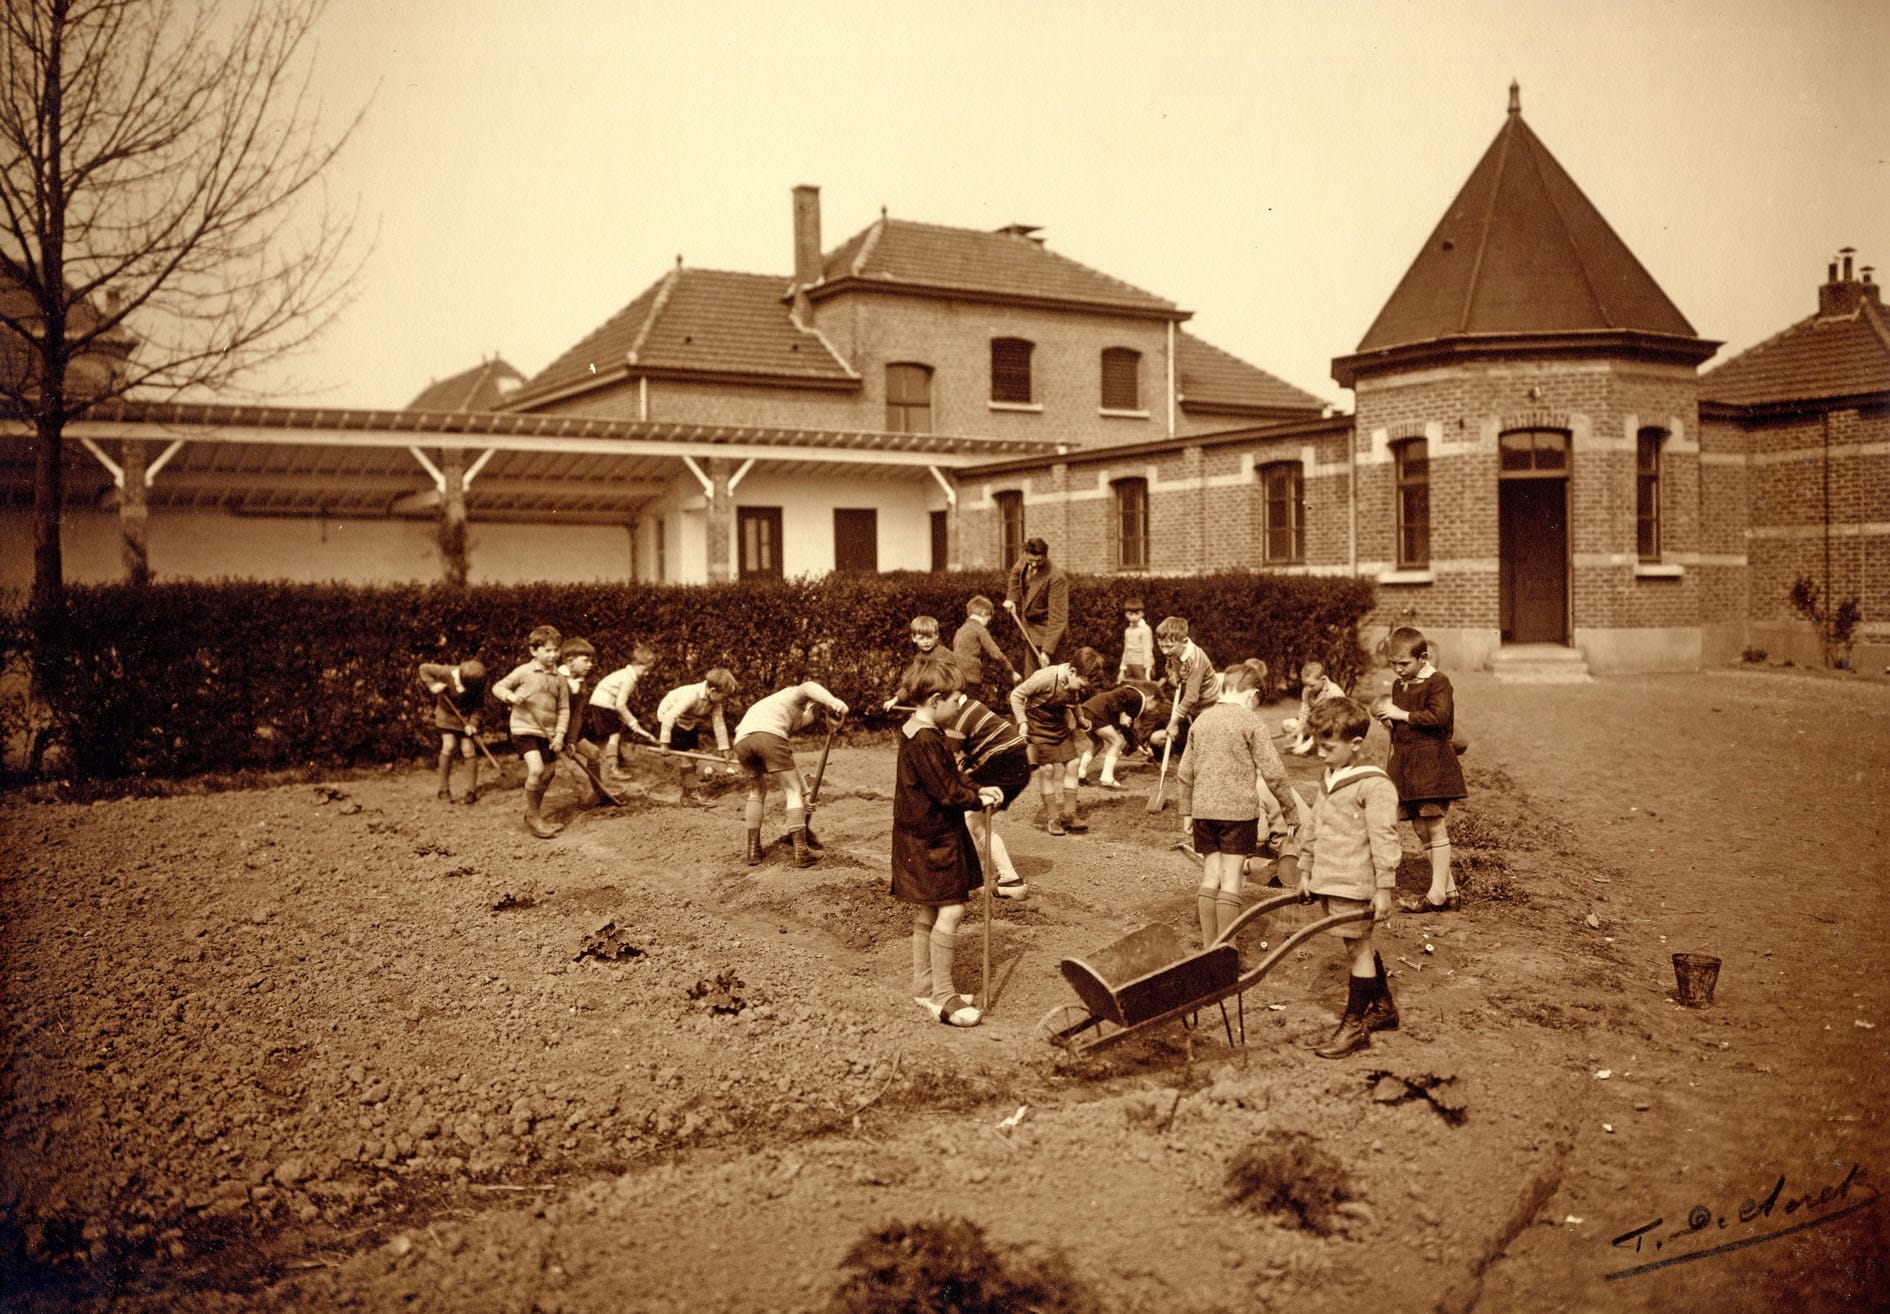 La première école du Karrenberg. Les enfants sont initiés au jardinage par leur instituteur R. Dewilder - Photo vers 1930 (Espace Mémoire coll. R. Nevens)